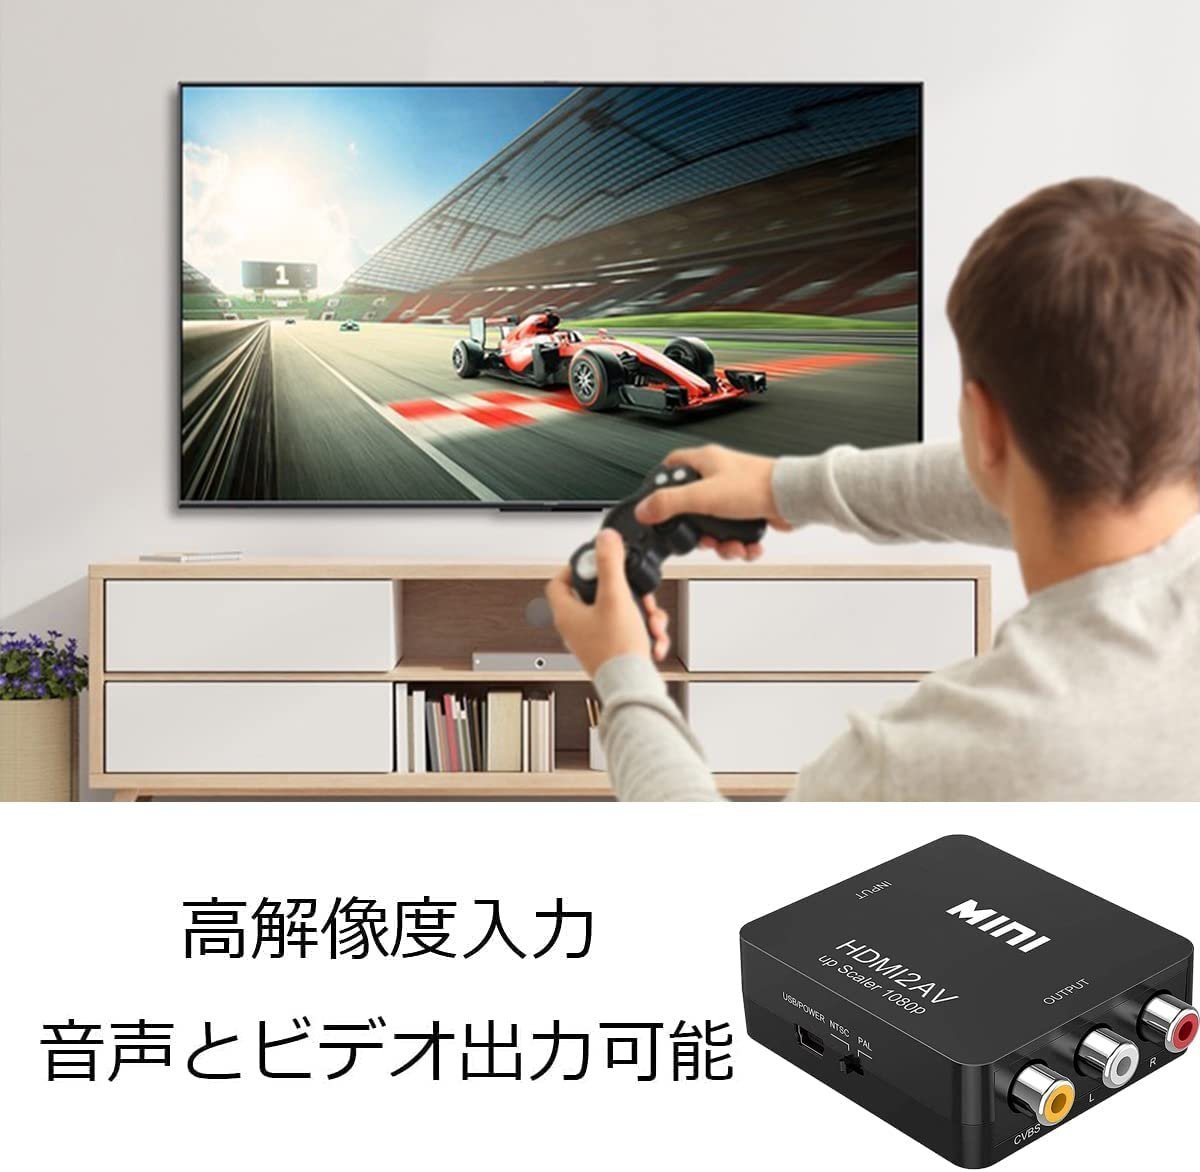 HDMI to AV コンバーター RCA変換アダプタ 1080P対応 PAL/NTSC切り替え HDMI入力をコンポジット出力へ変換 USB給電ケーブル付き_画像6